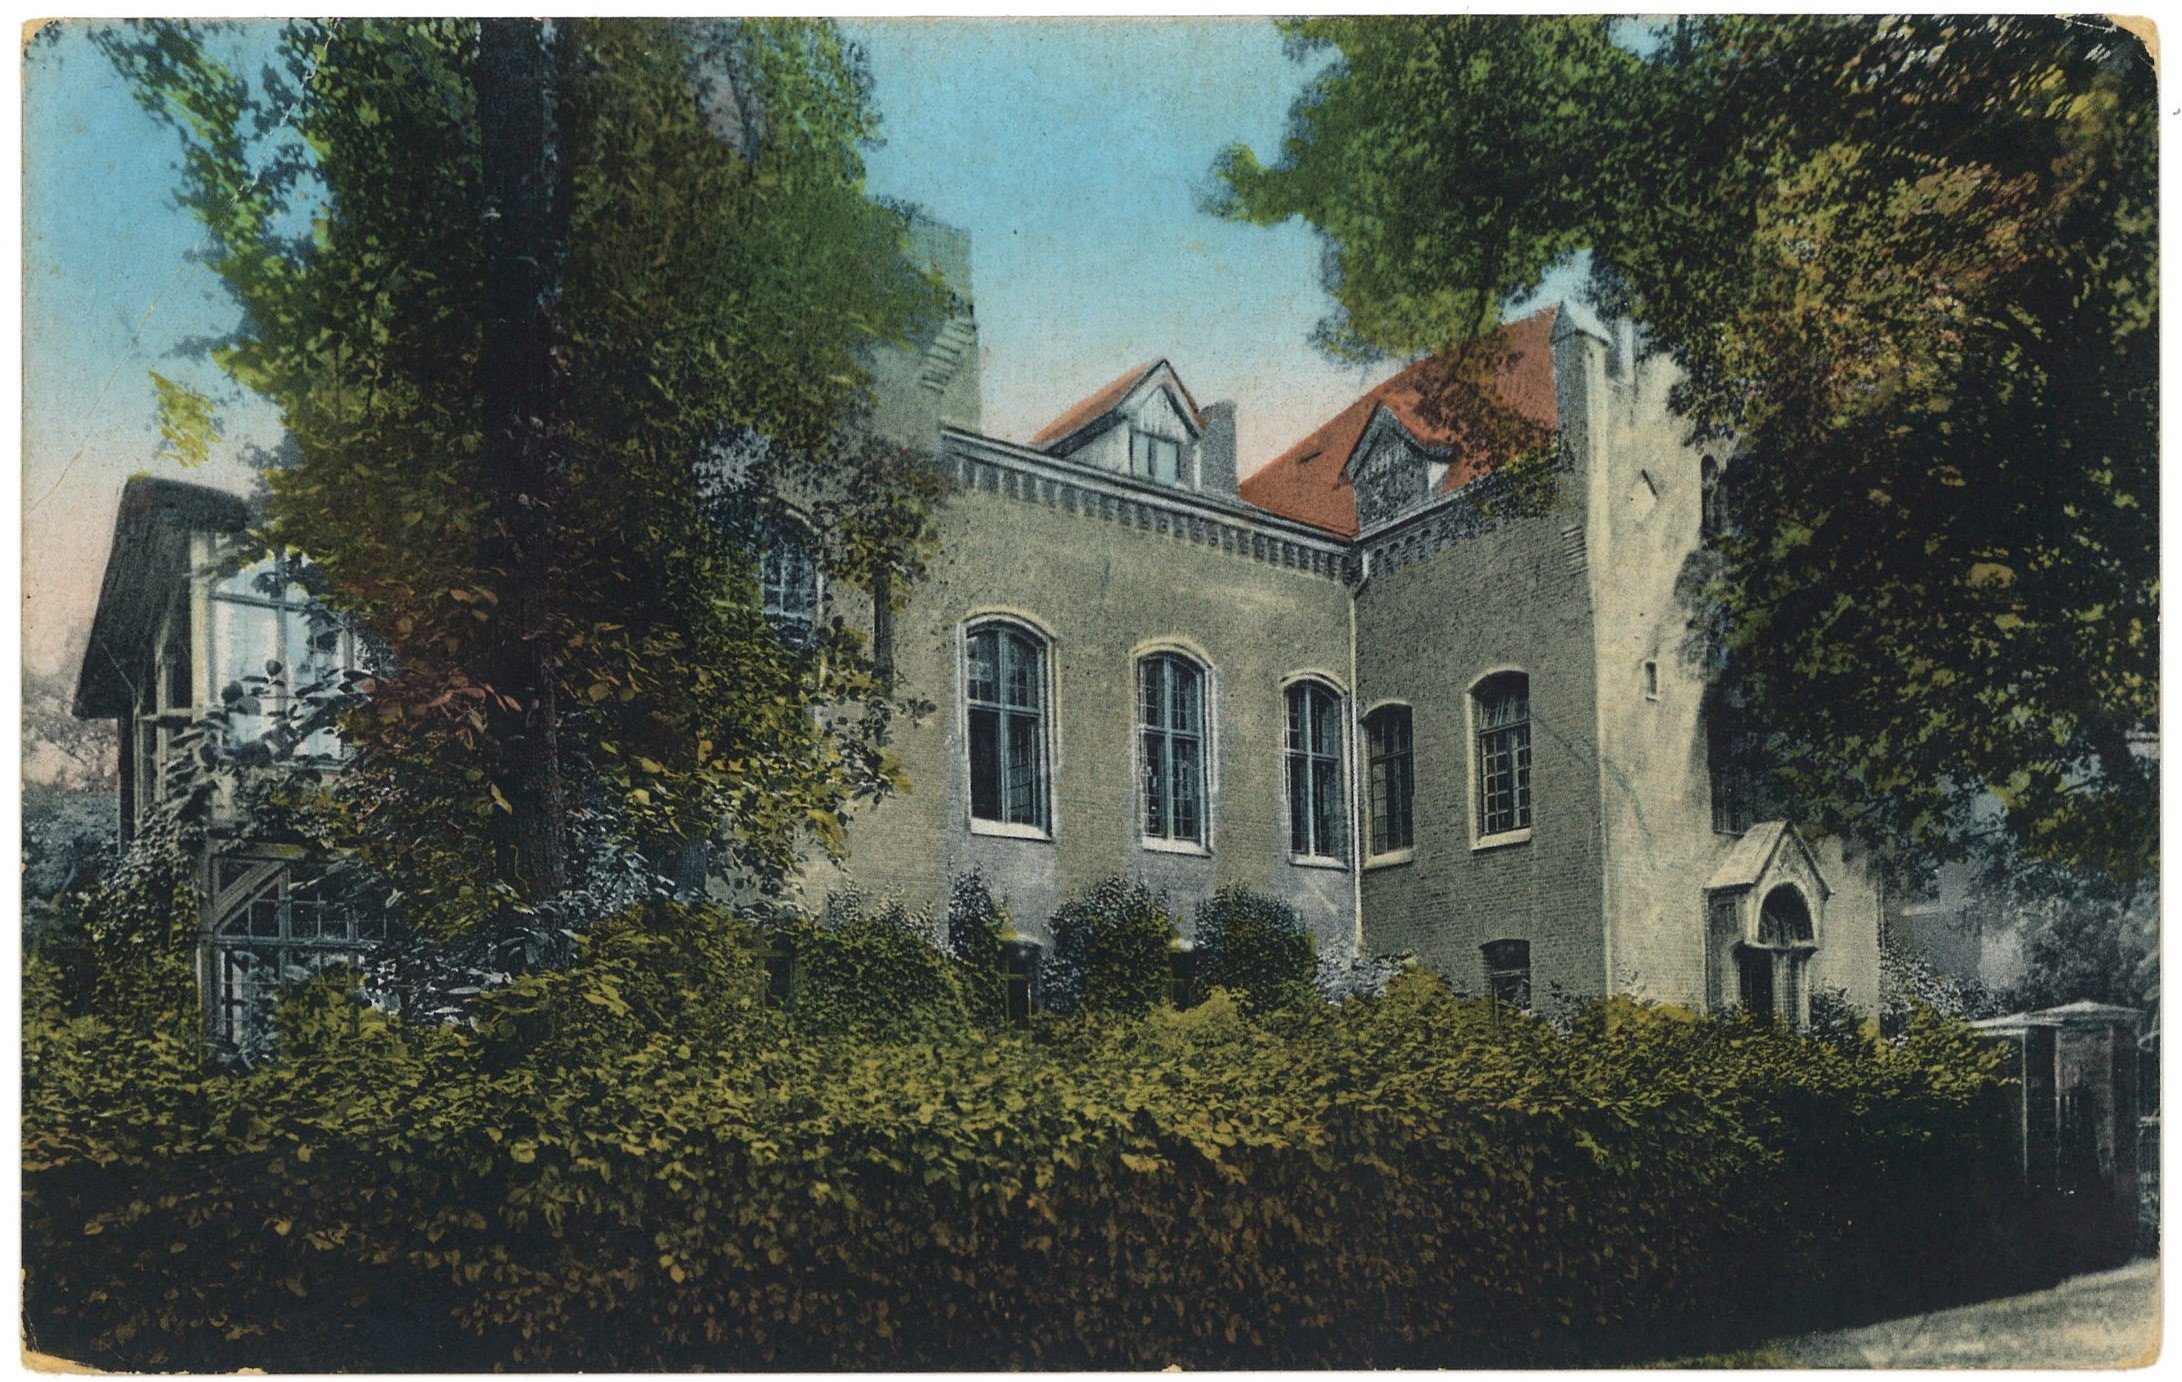 Sonnenburg (Neumark) [Słońsk]: Johanniterordens-Krankenhaus (Landesgeschichtliche Vereinigung für die Mark Brandenburg e.V., Archiv CC BY)